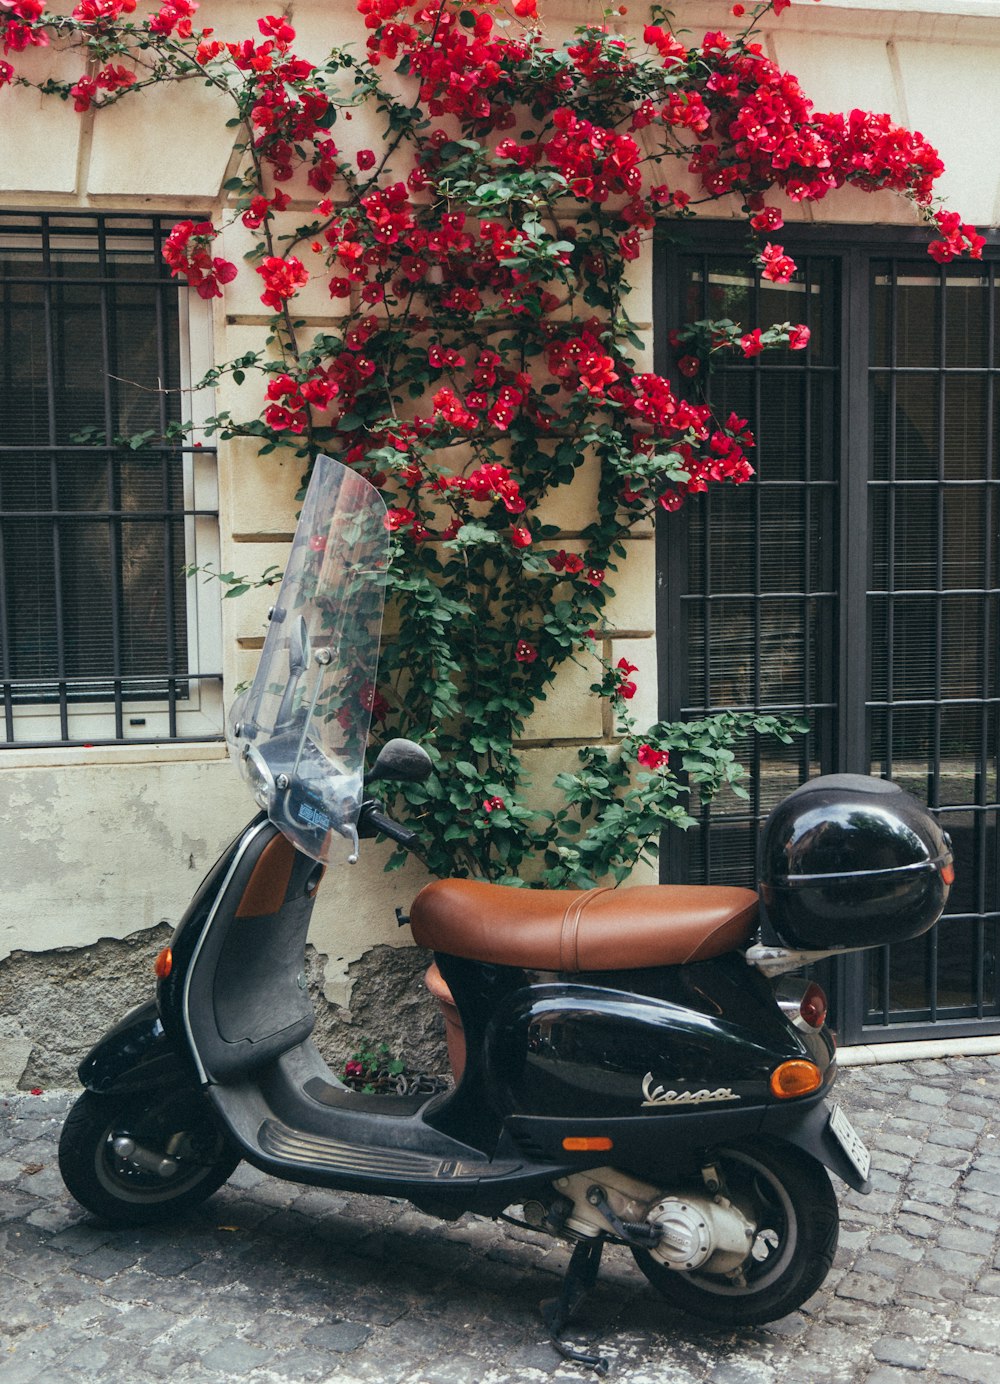 Un scooter garé devant un immeuble avec des fleurs rouges